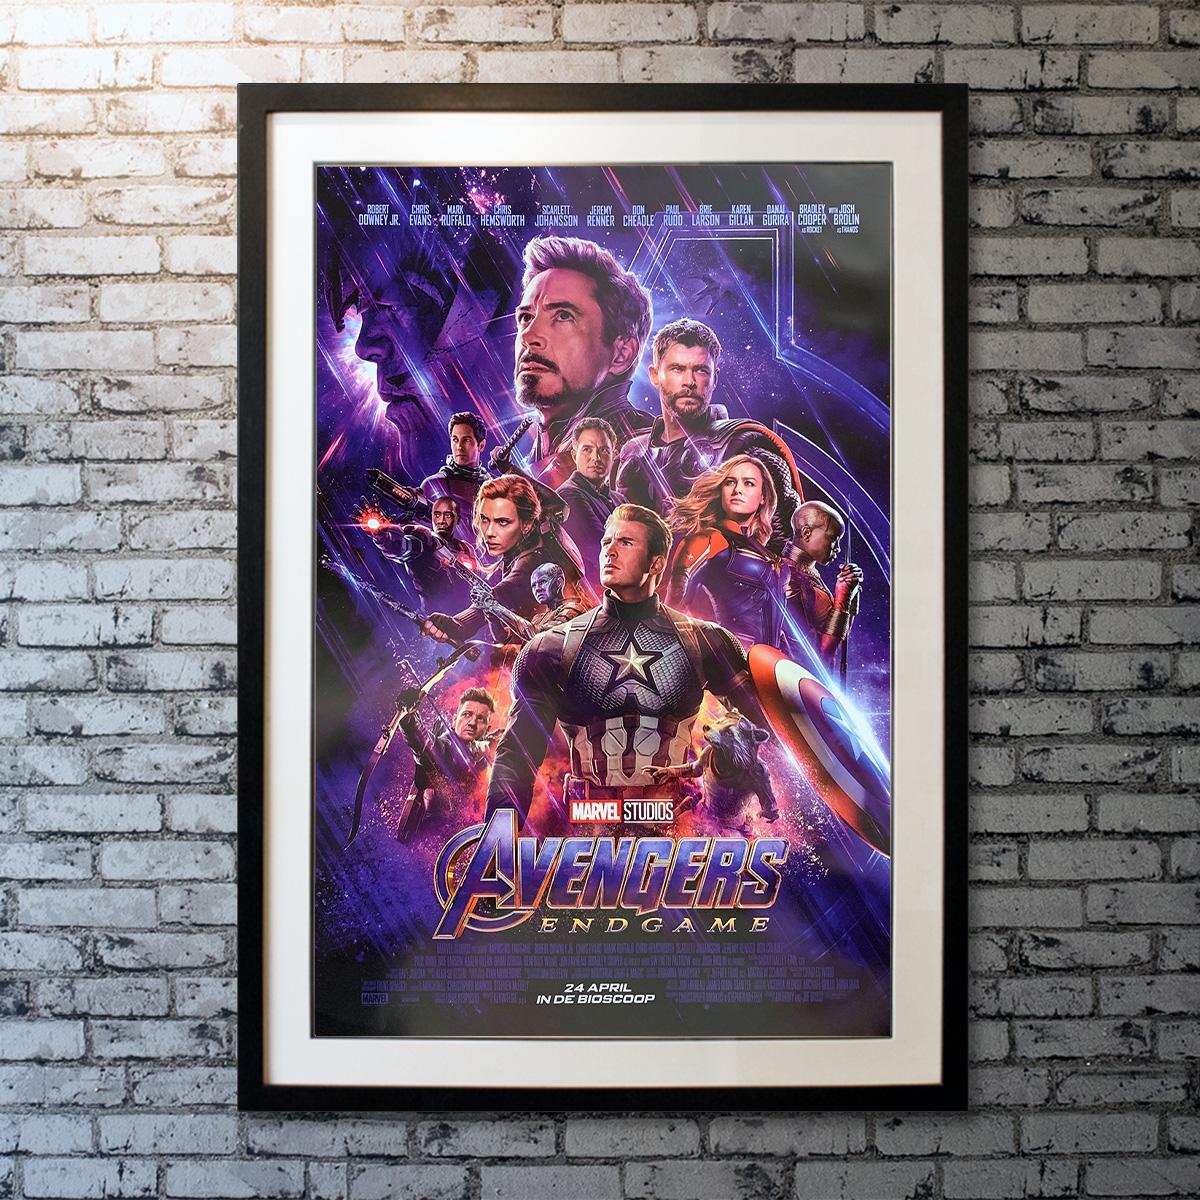 American Avengers: Endgame '2019' Poster For Sale